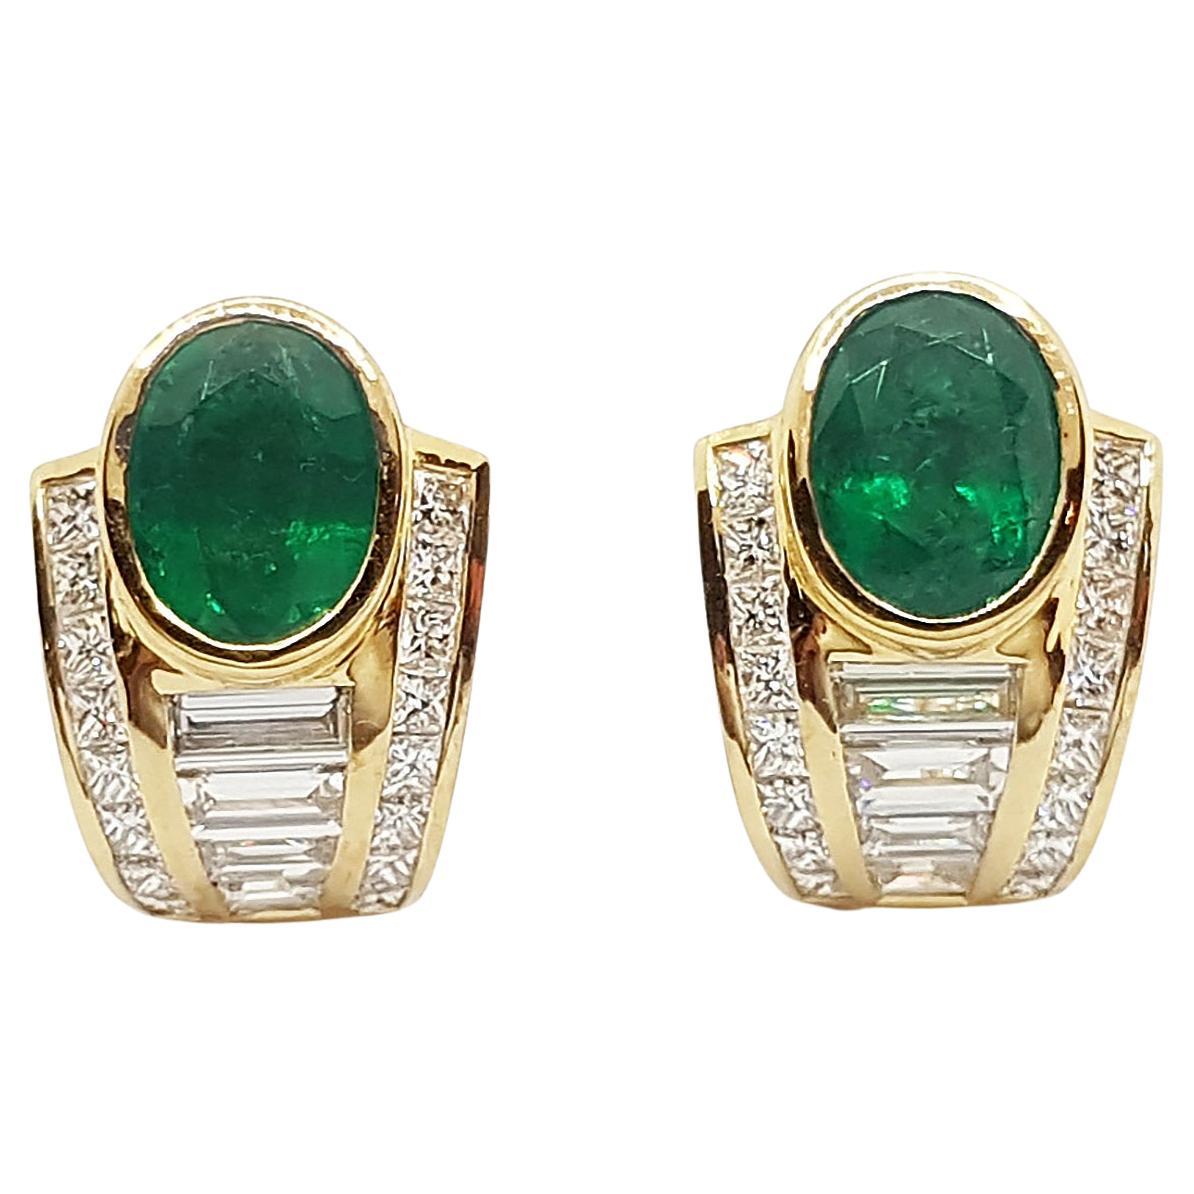 Ohrringe mit Smaragd und Diamanten in 18 Karat Gold gefasst